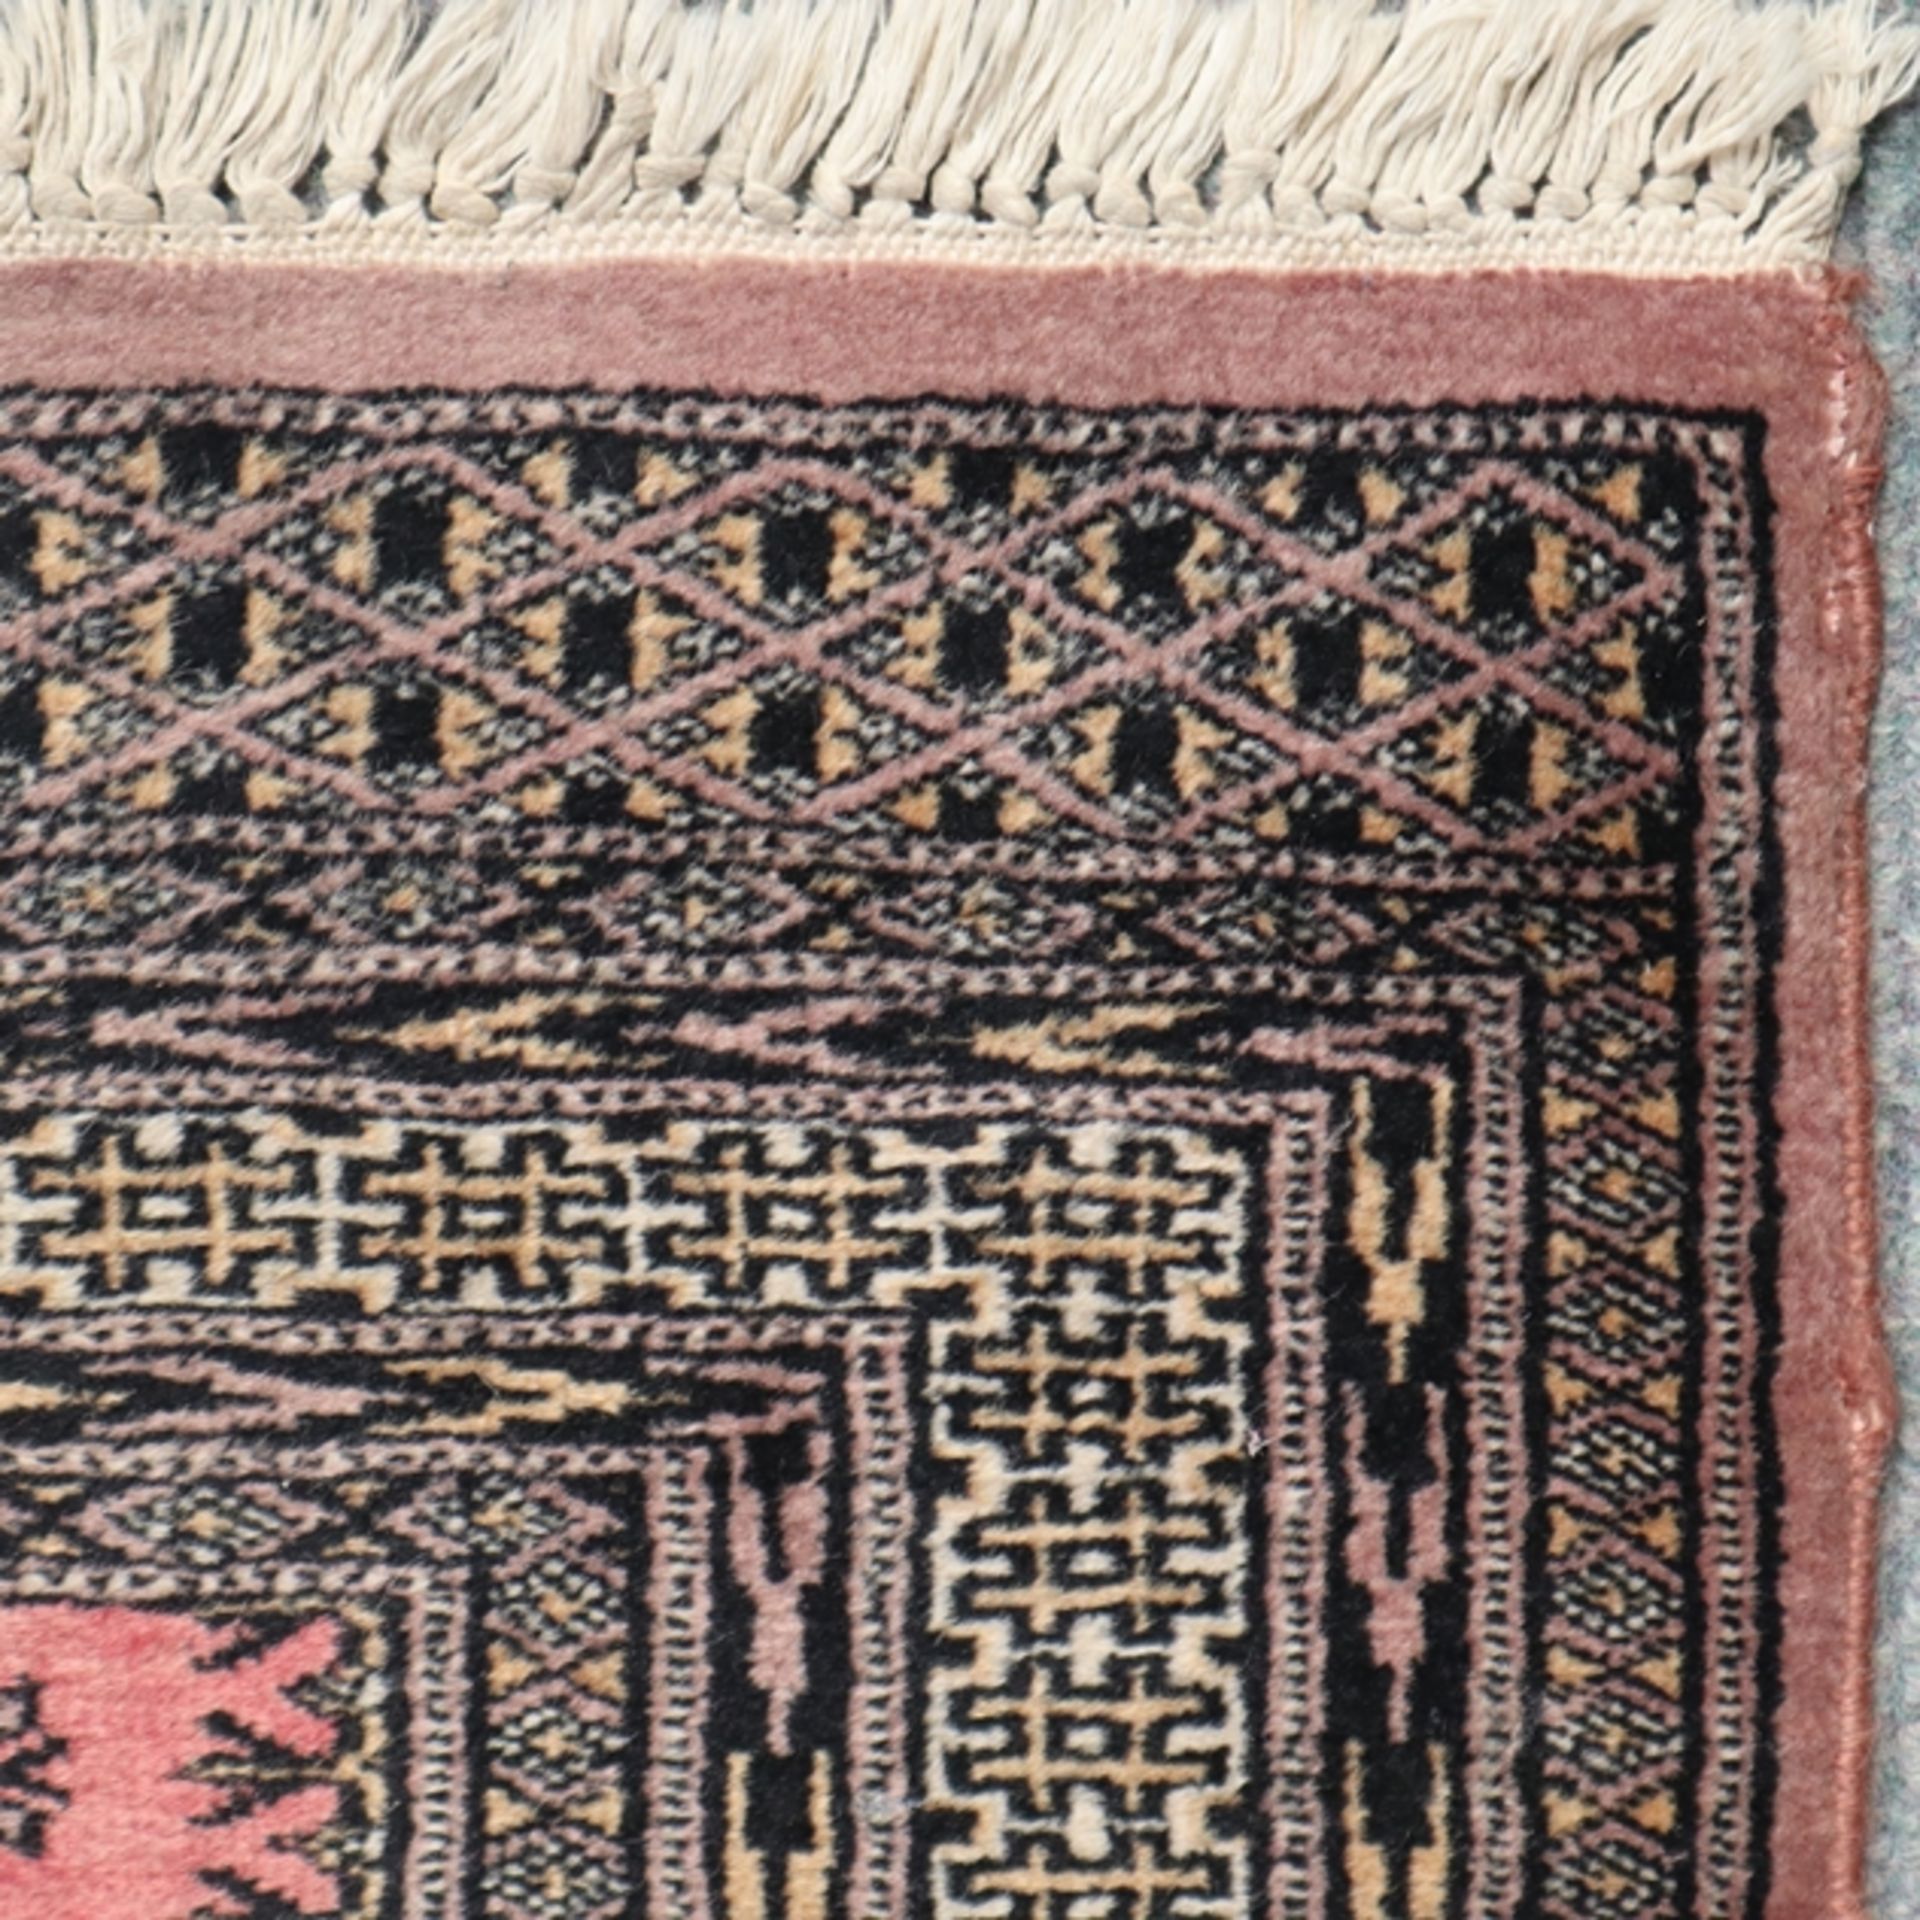 Buchara-Läufer - Pakistan, 20. Jh., Wolle, ornamental gemustert, ca. 265 x 82 cm, Gebrauchsspuren,  - Bild 5 aus 7